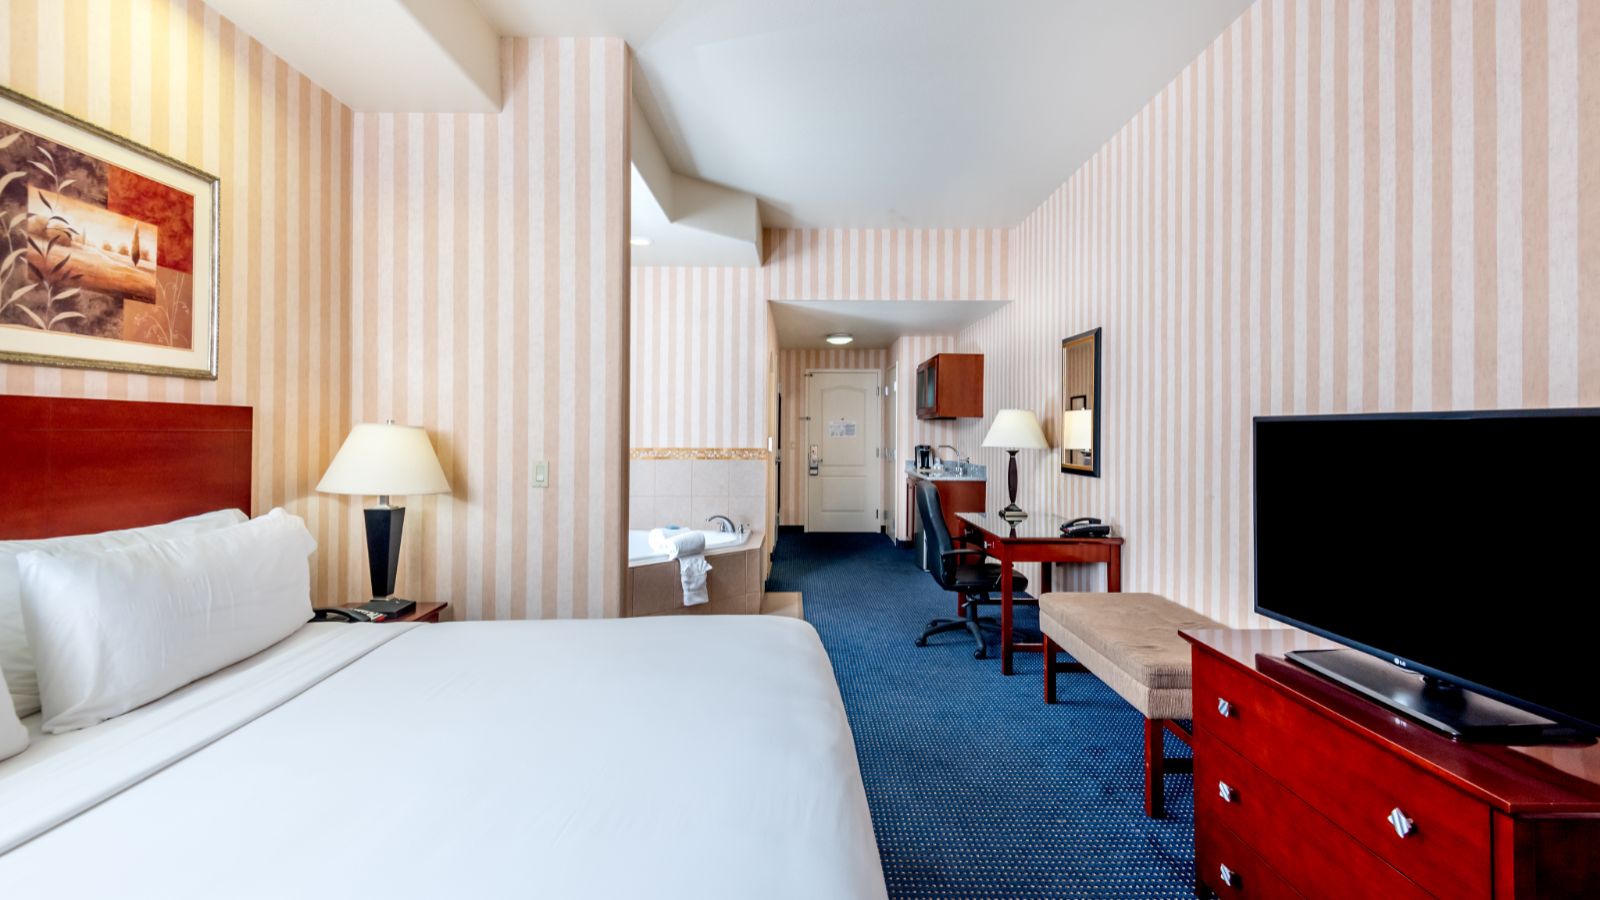 Lathrop CA Hotel rooms, suites